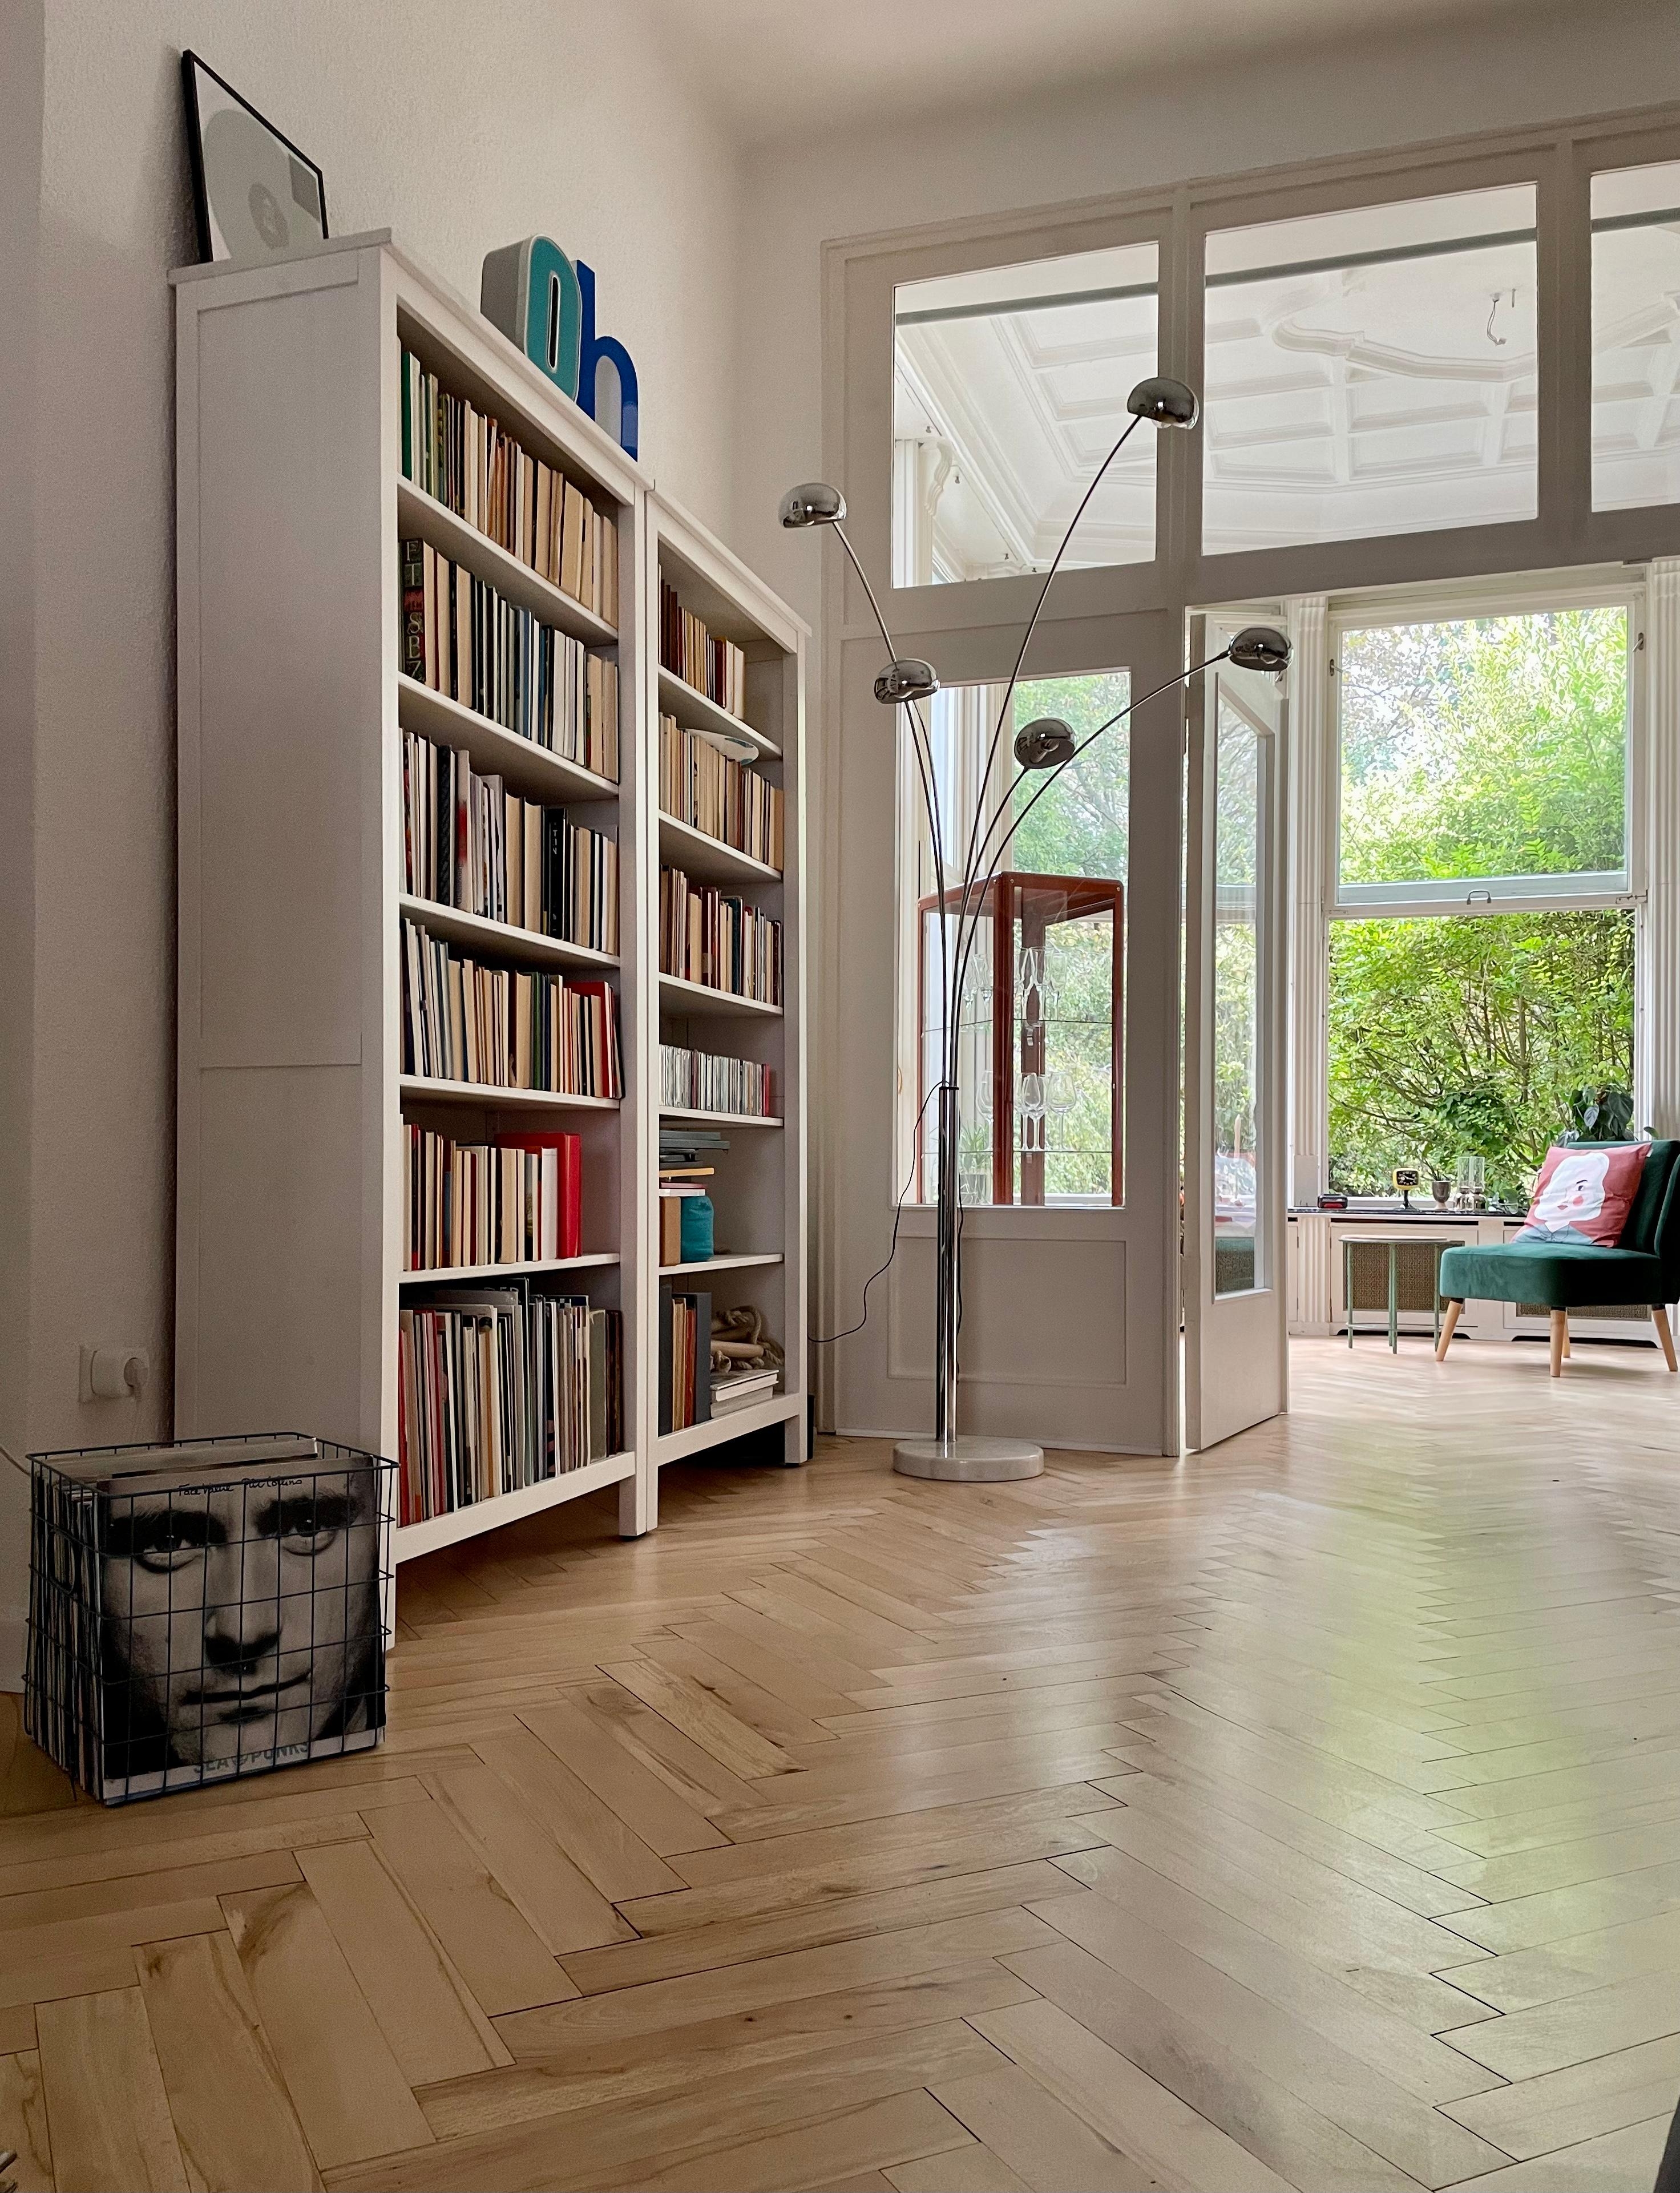 Wohnzimmer + Wintergarten = ❤️ #couchliebt #livingroom